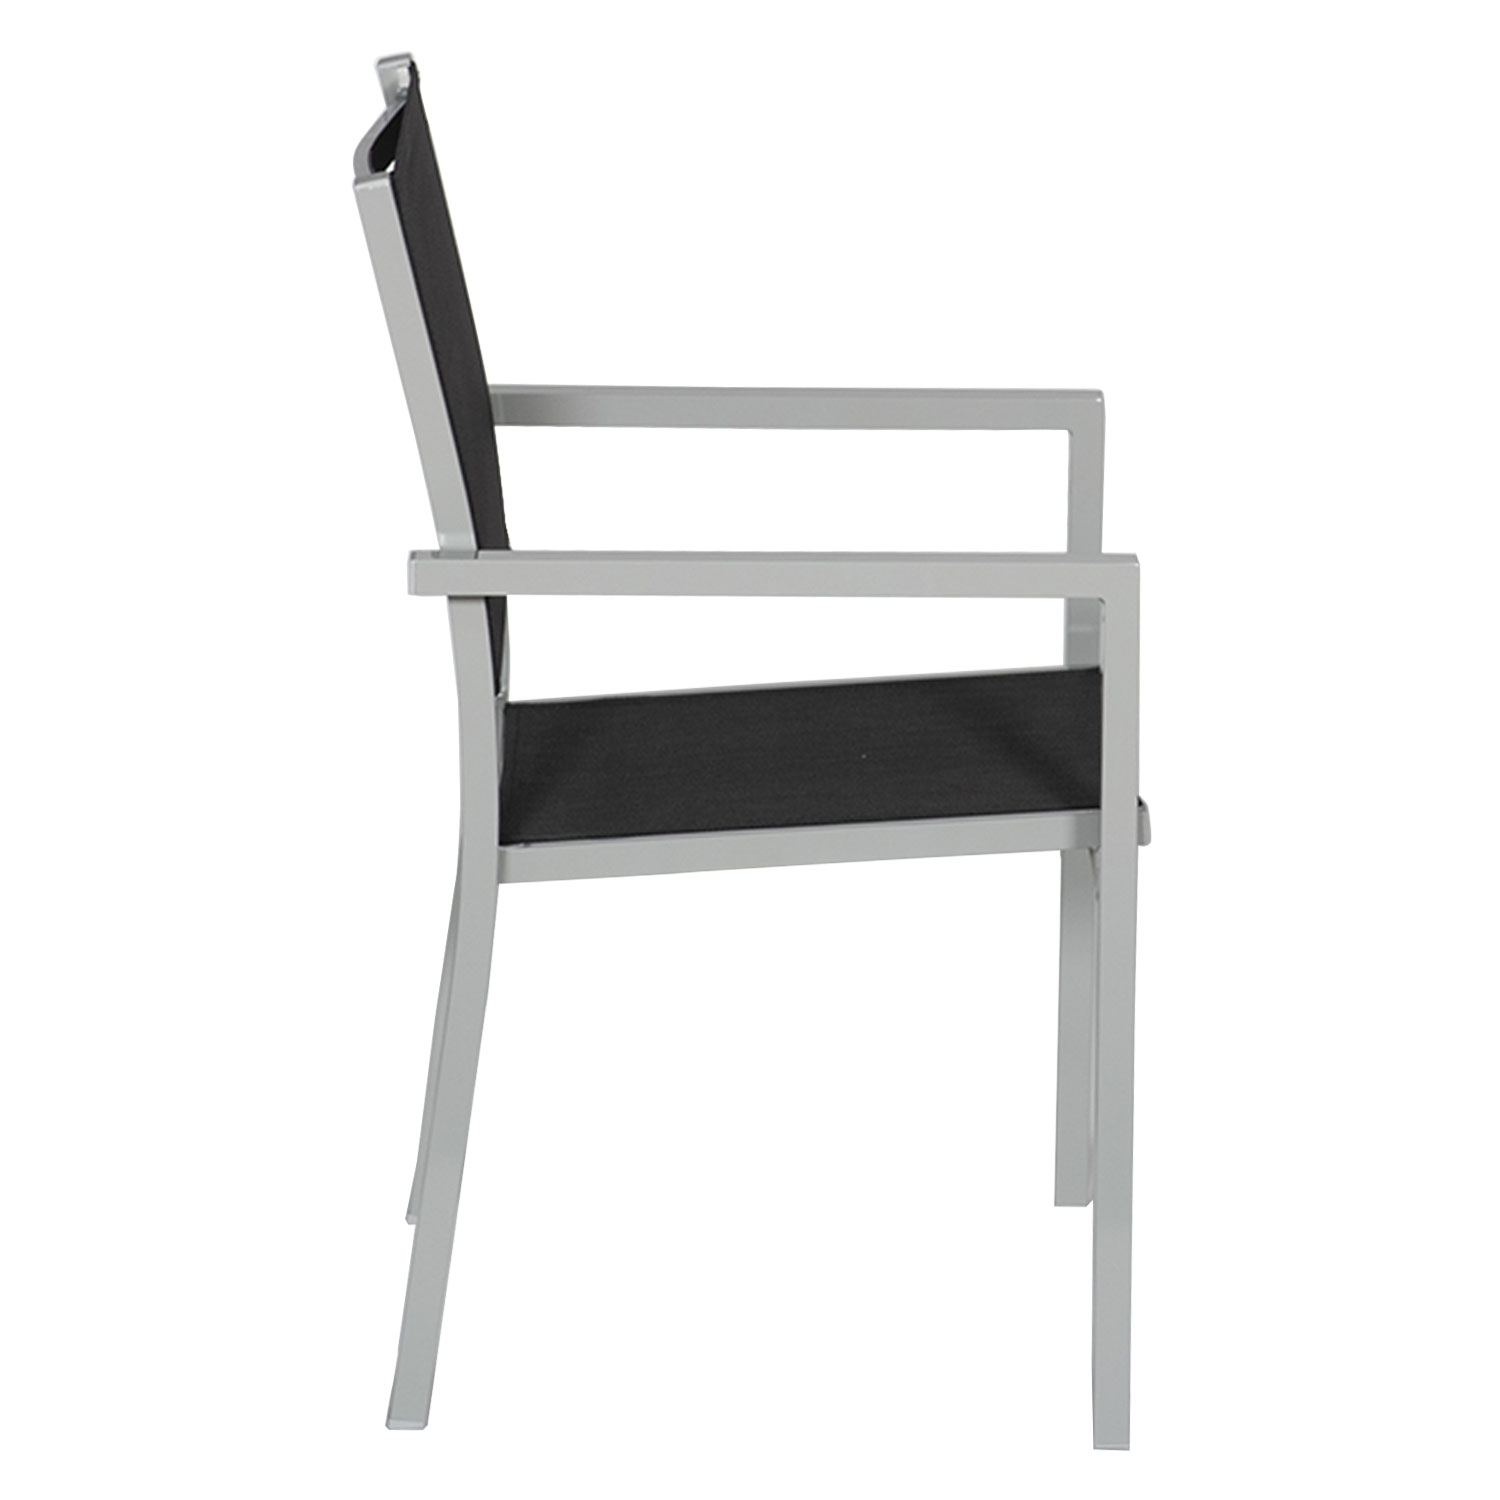 Juego de 4 sillas de aluminio gris - textileno negro